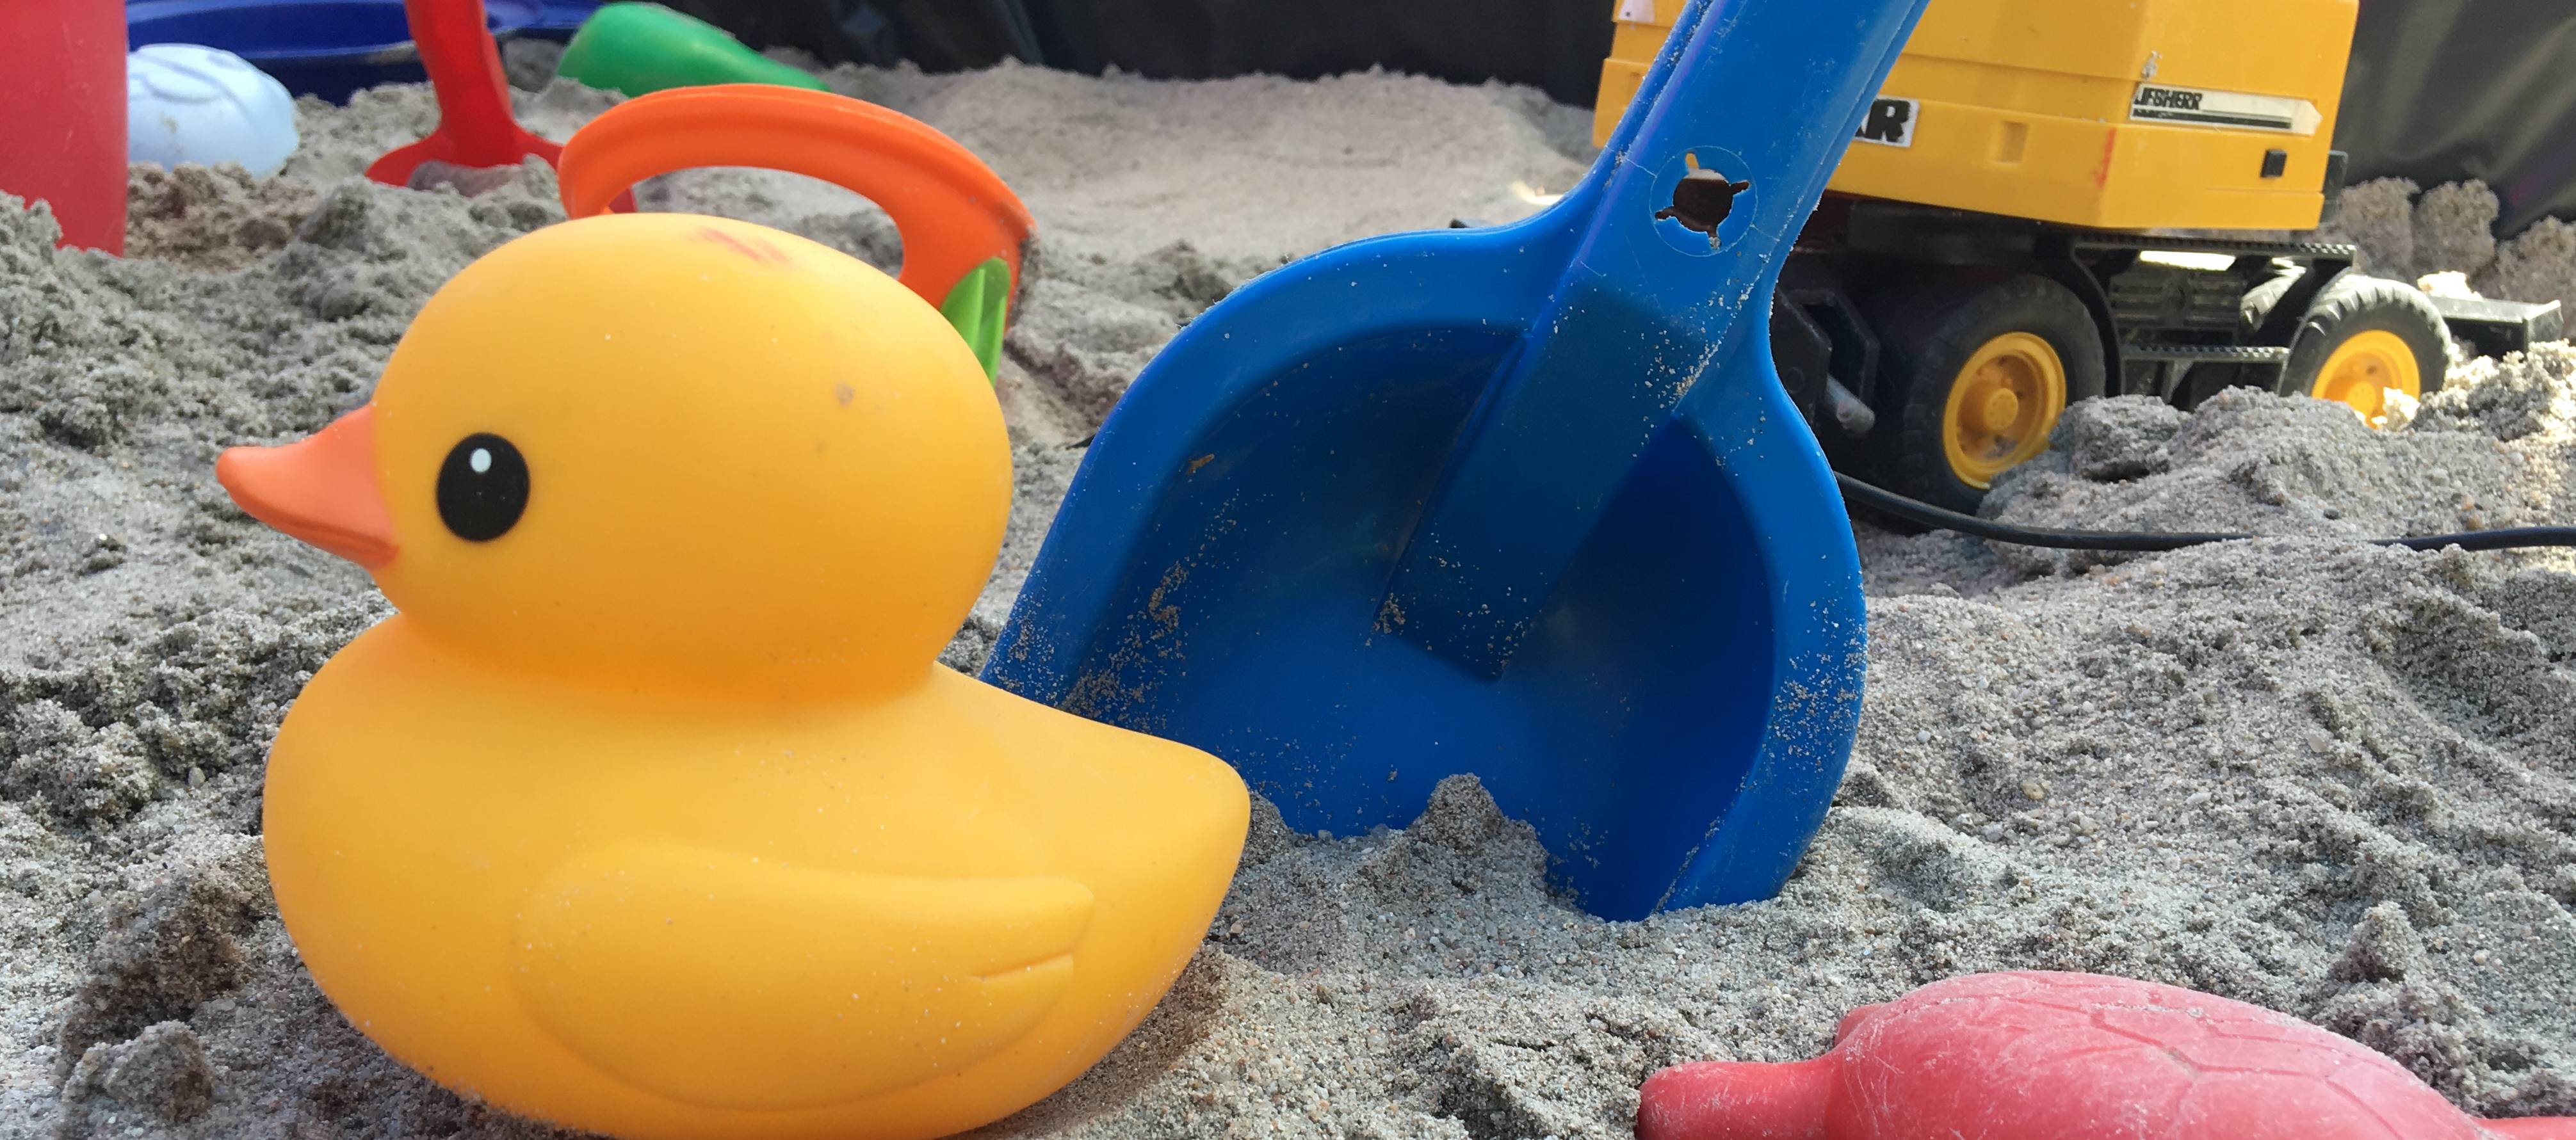  Kind spielt in Sandkasten 